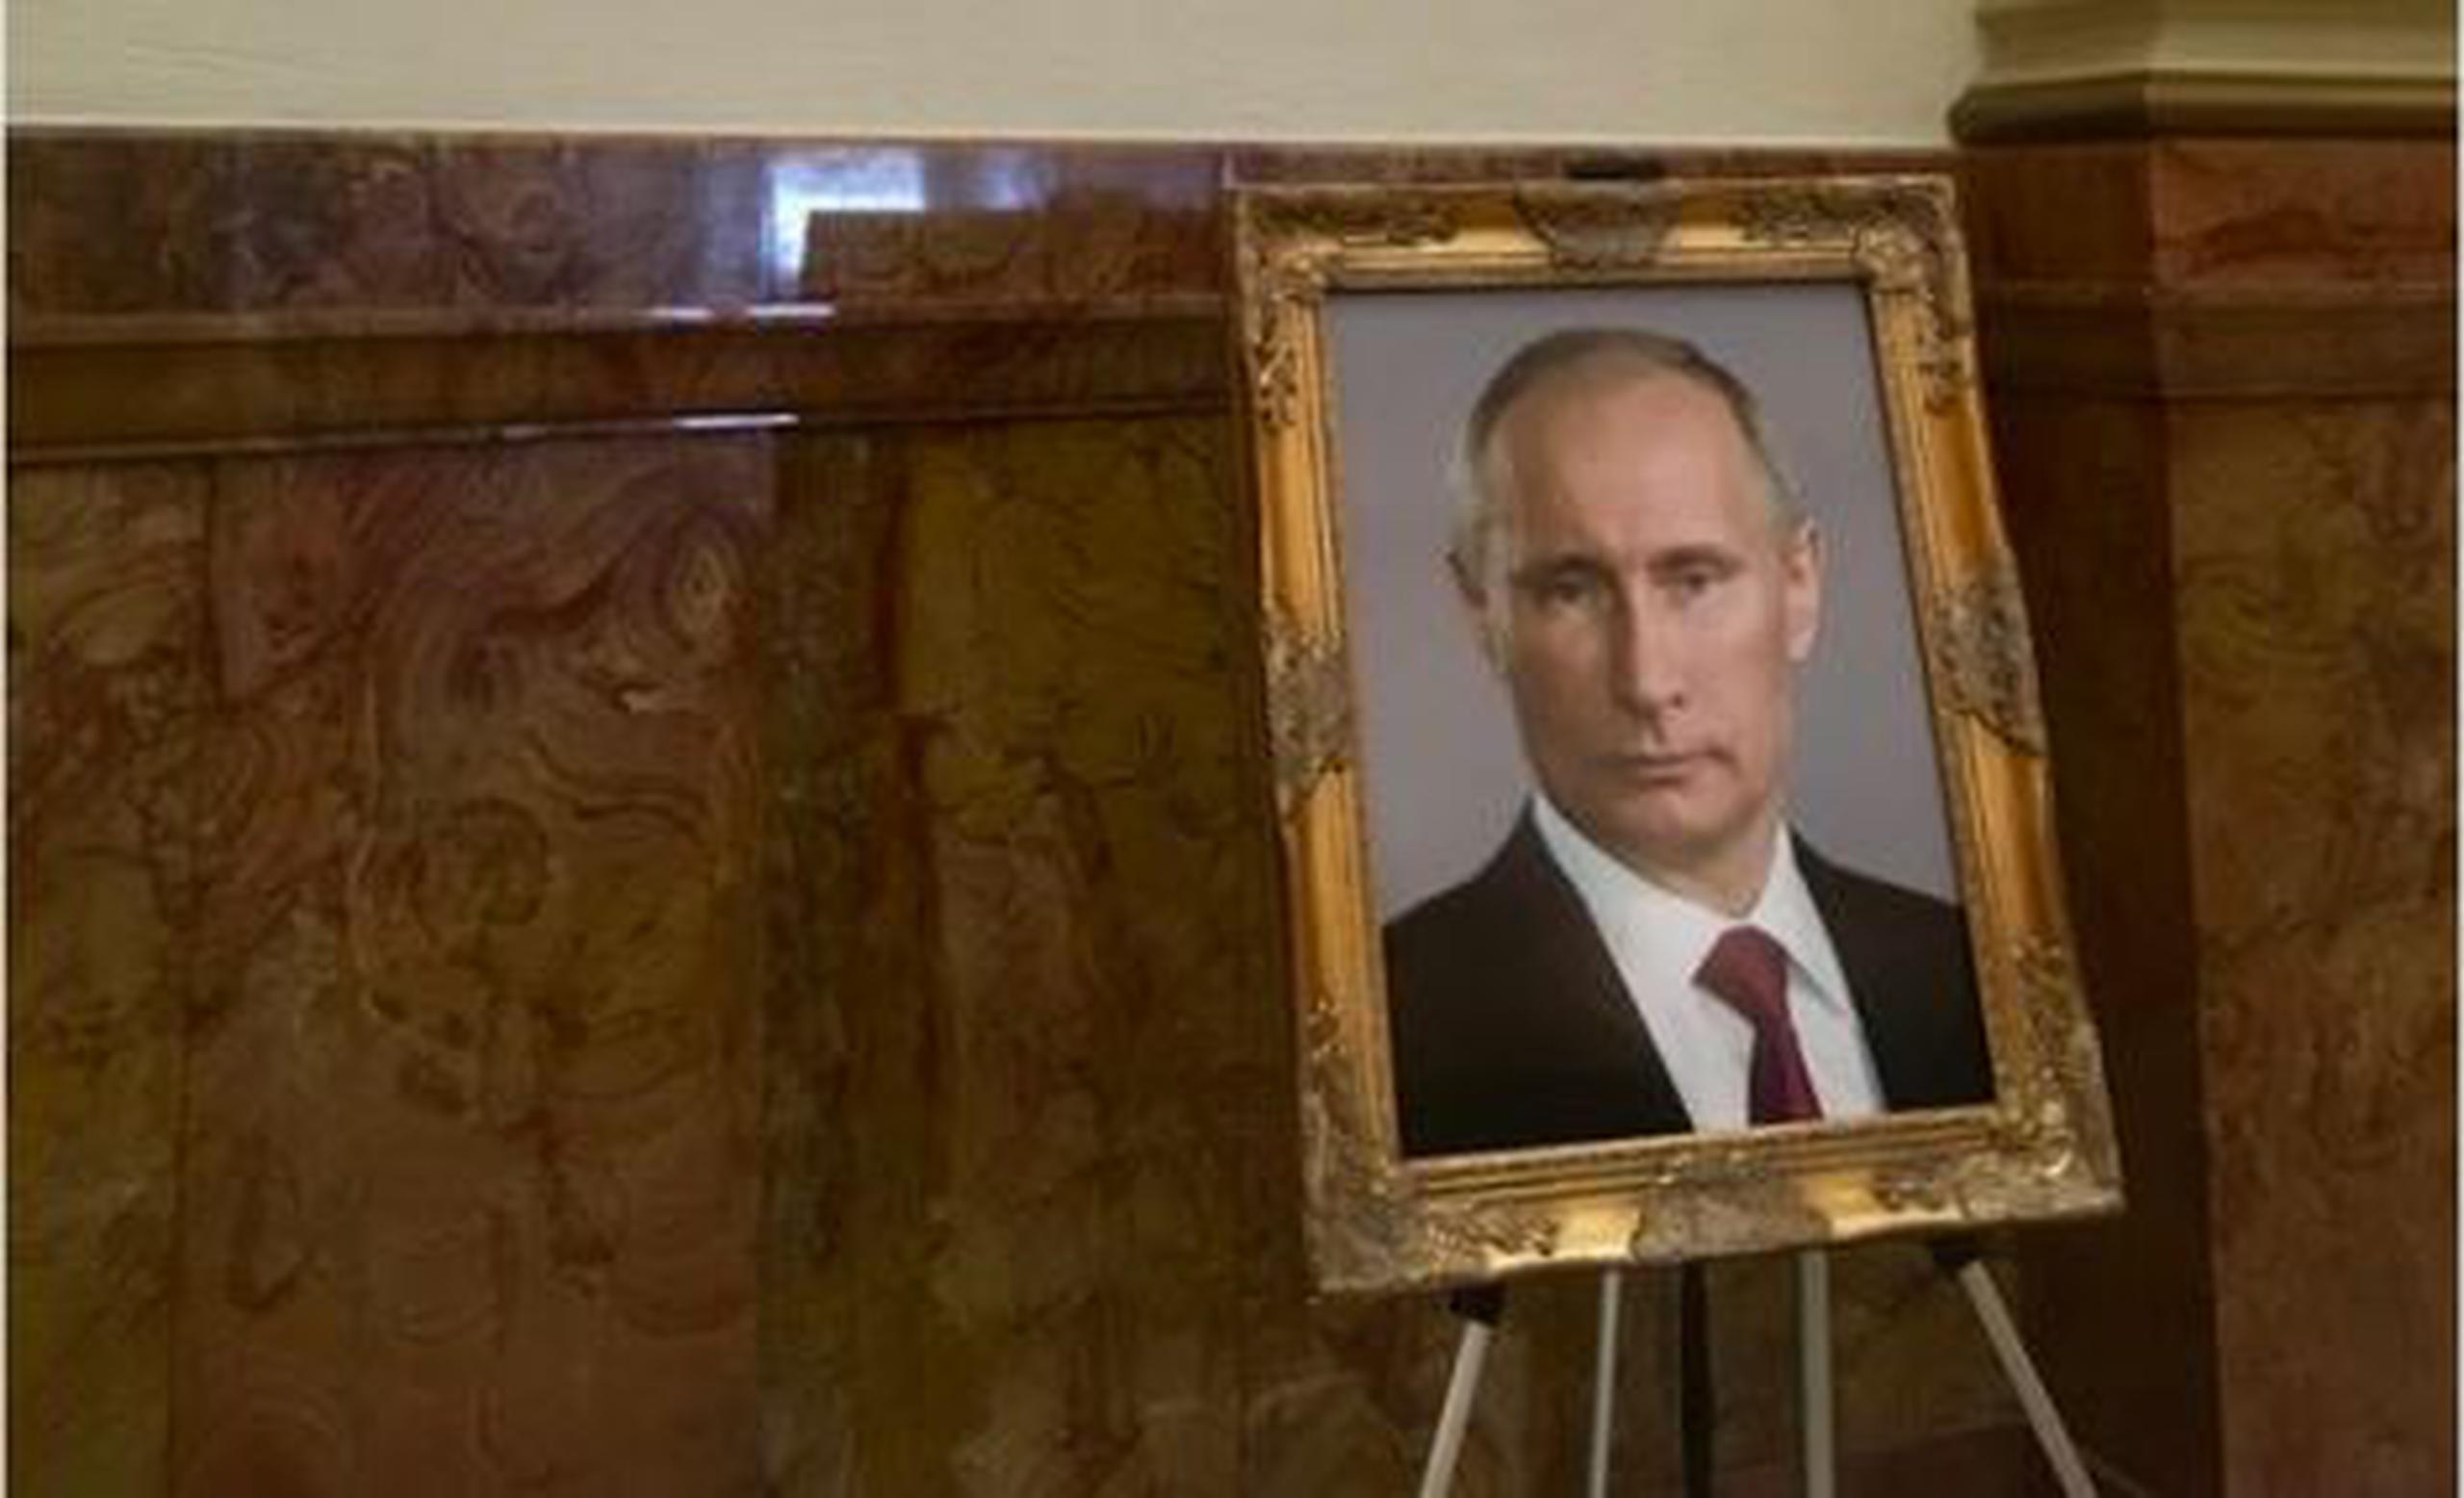 Antes de que la imagen de Putin fuese retirada, el senador estatal Steve Fenberg (demócrata) tomó una fotografía de la imagen y la publicó en su cuenta de Twitter, usando el hashtag #putinpotus. (Twitter)